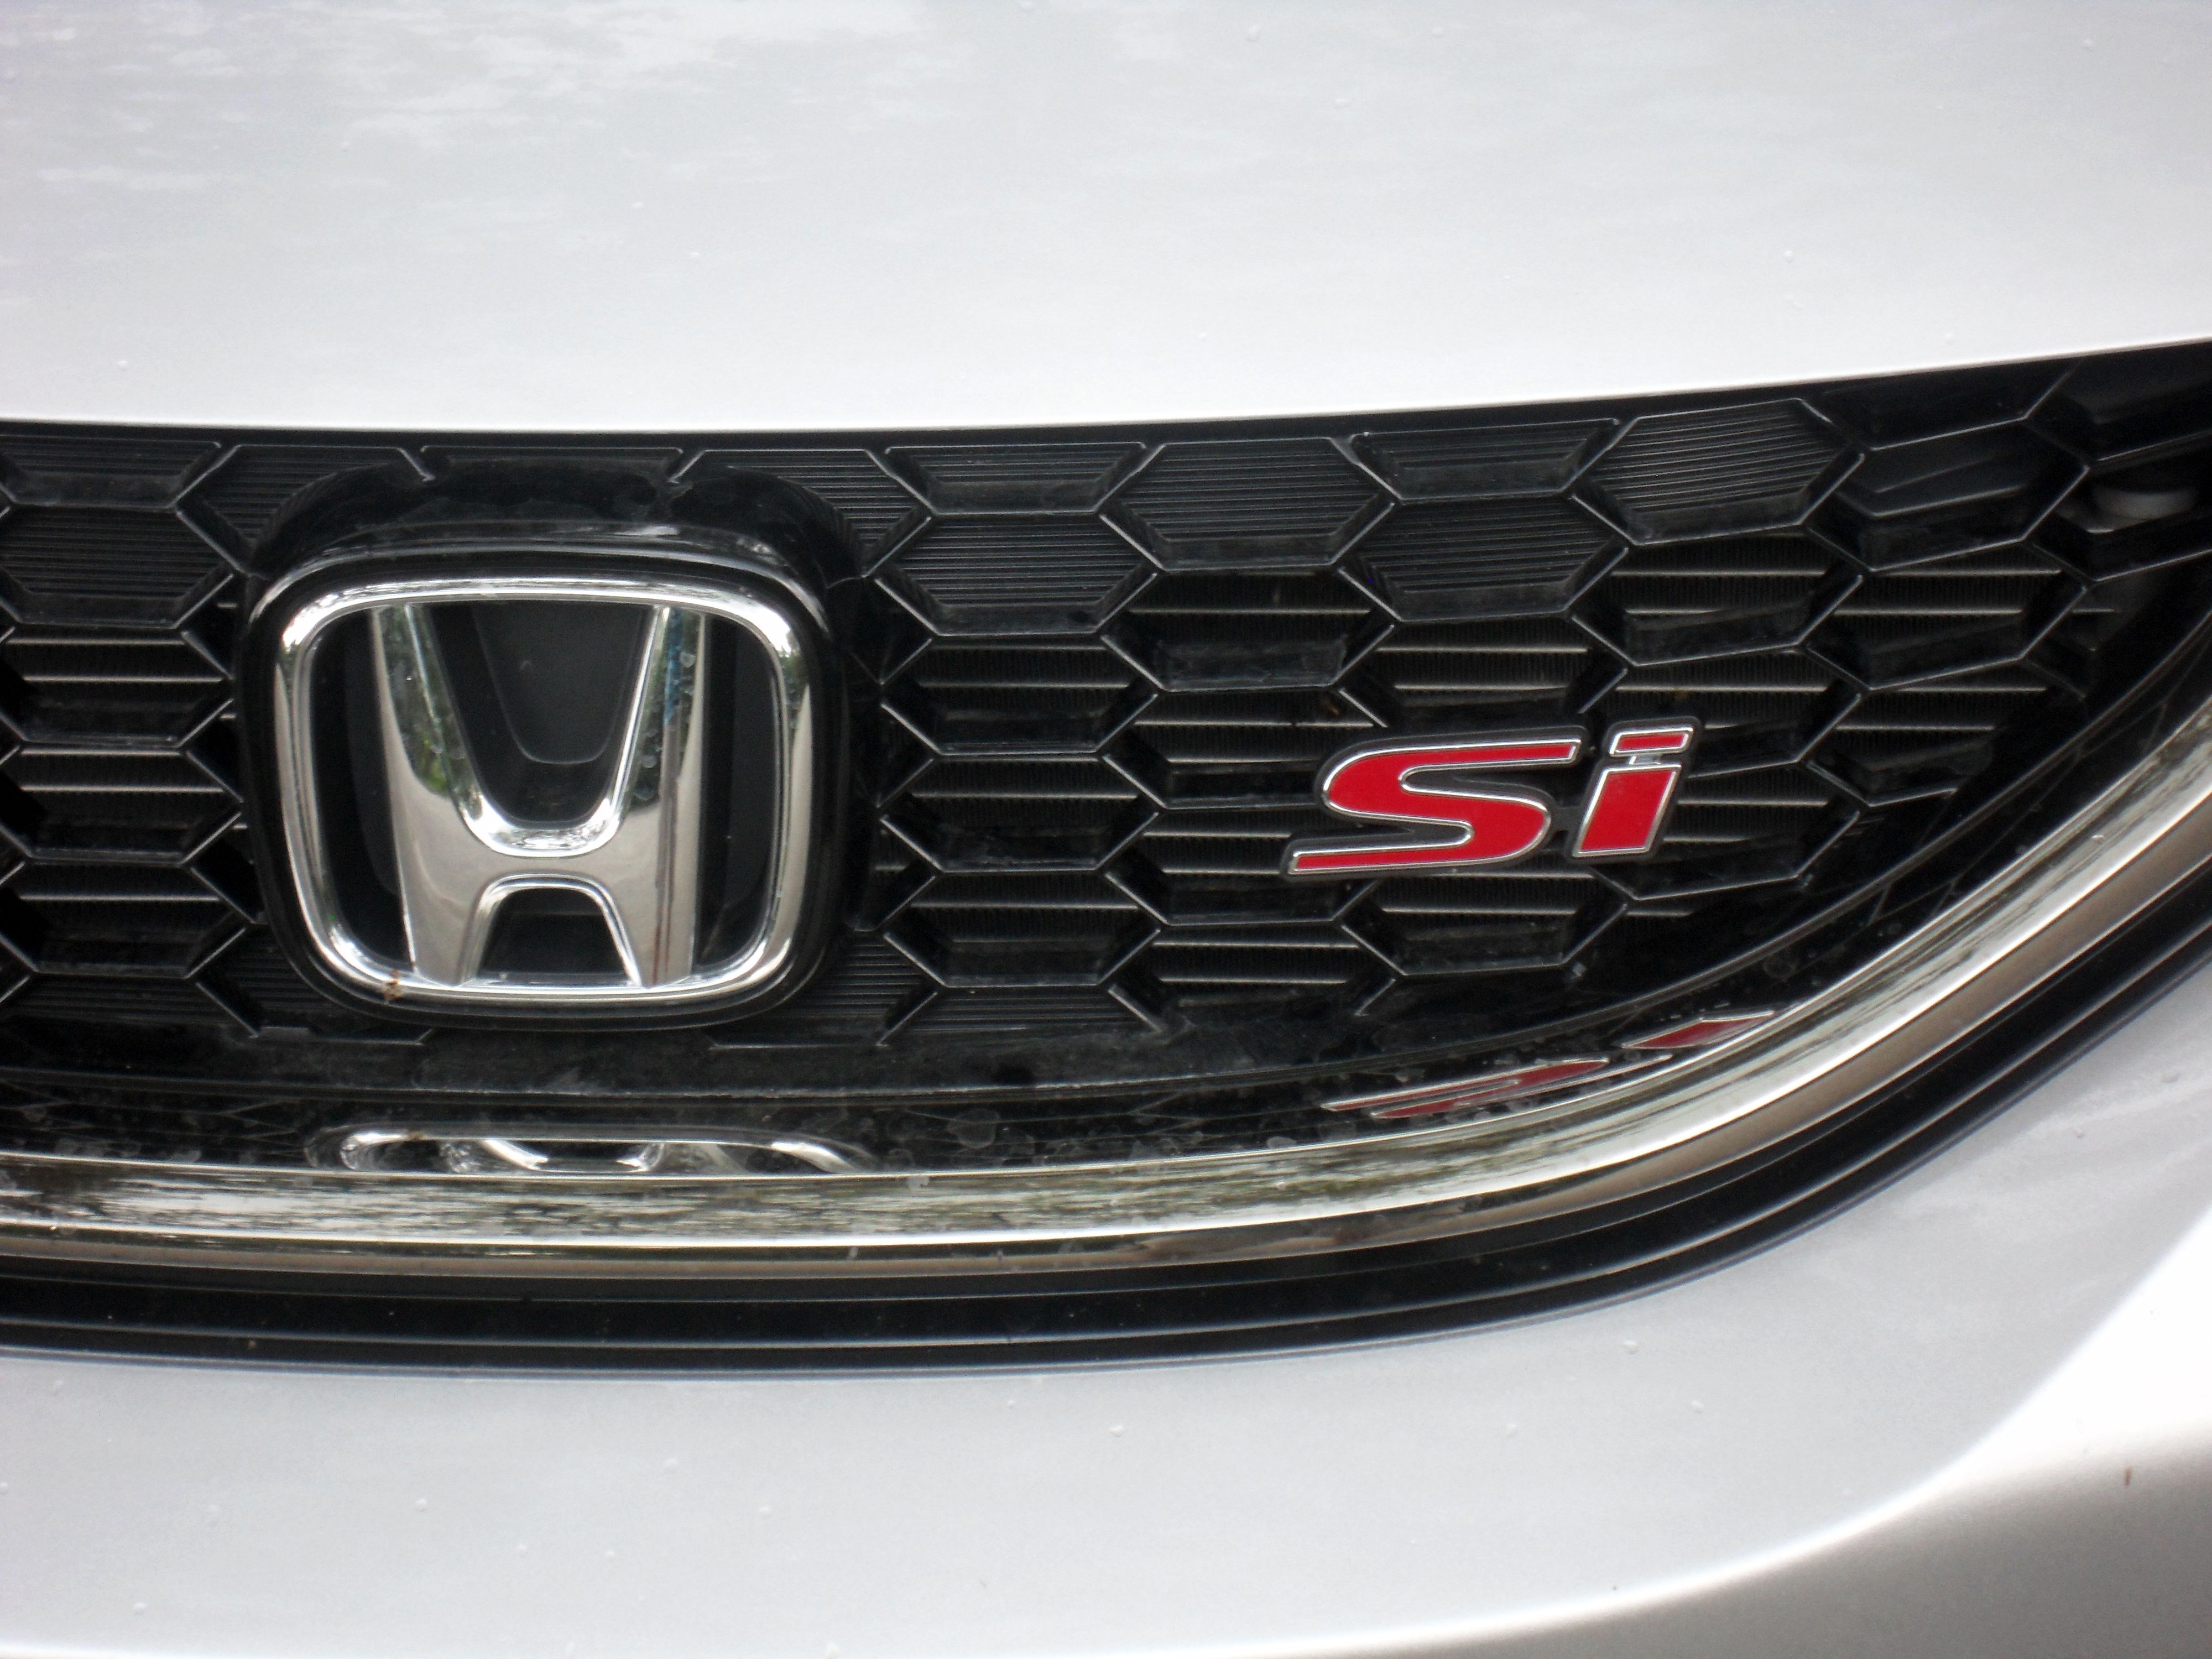 2014 Honda Civic Si Sedan - Driven